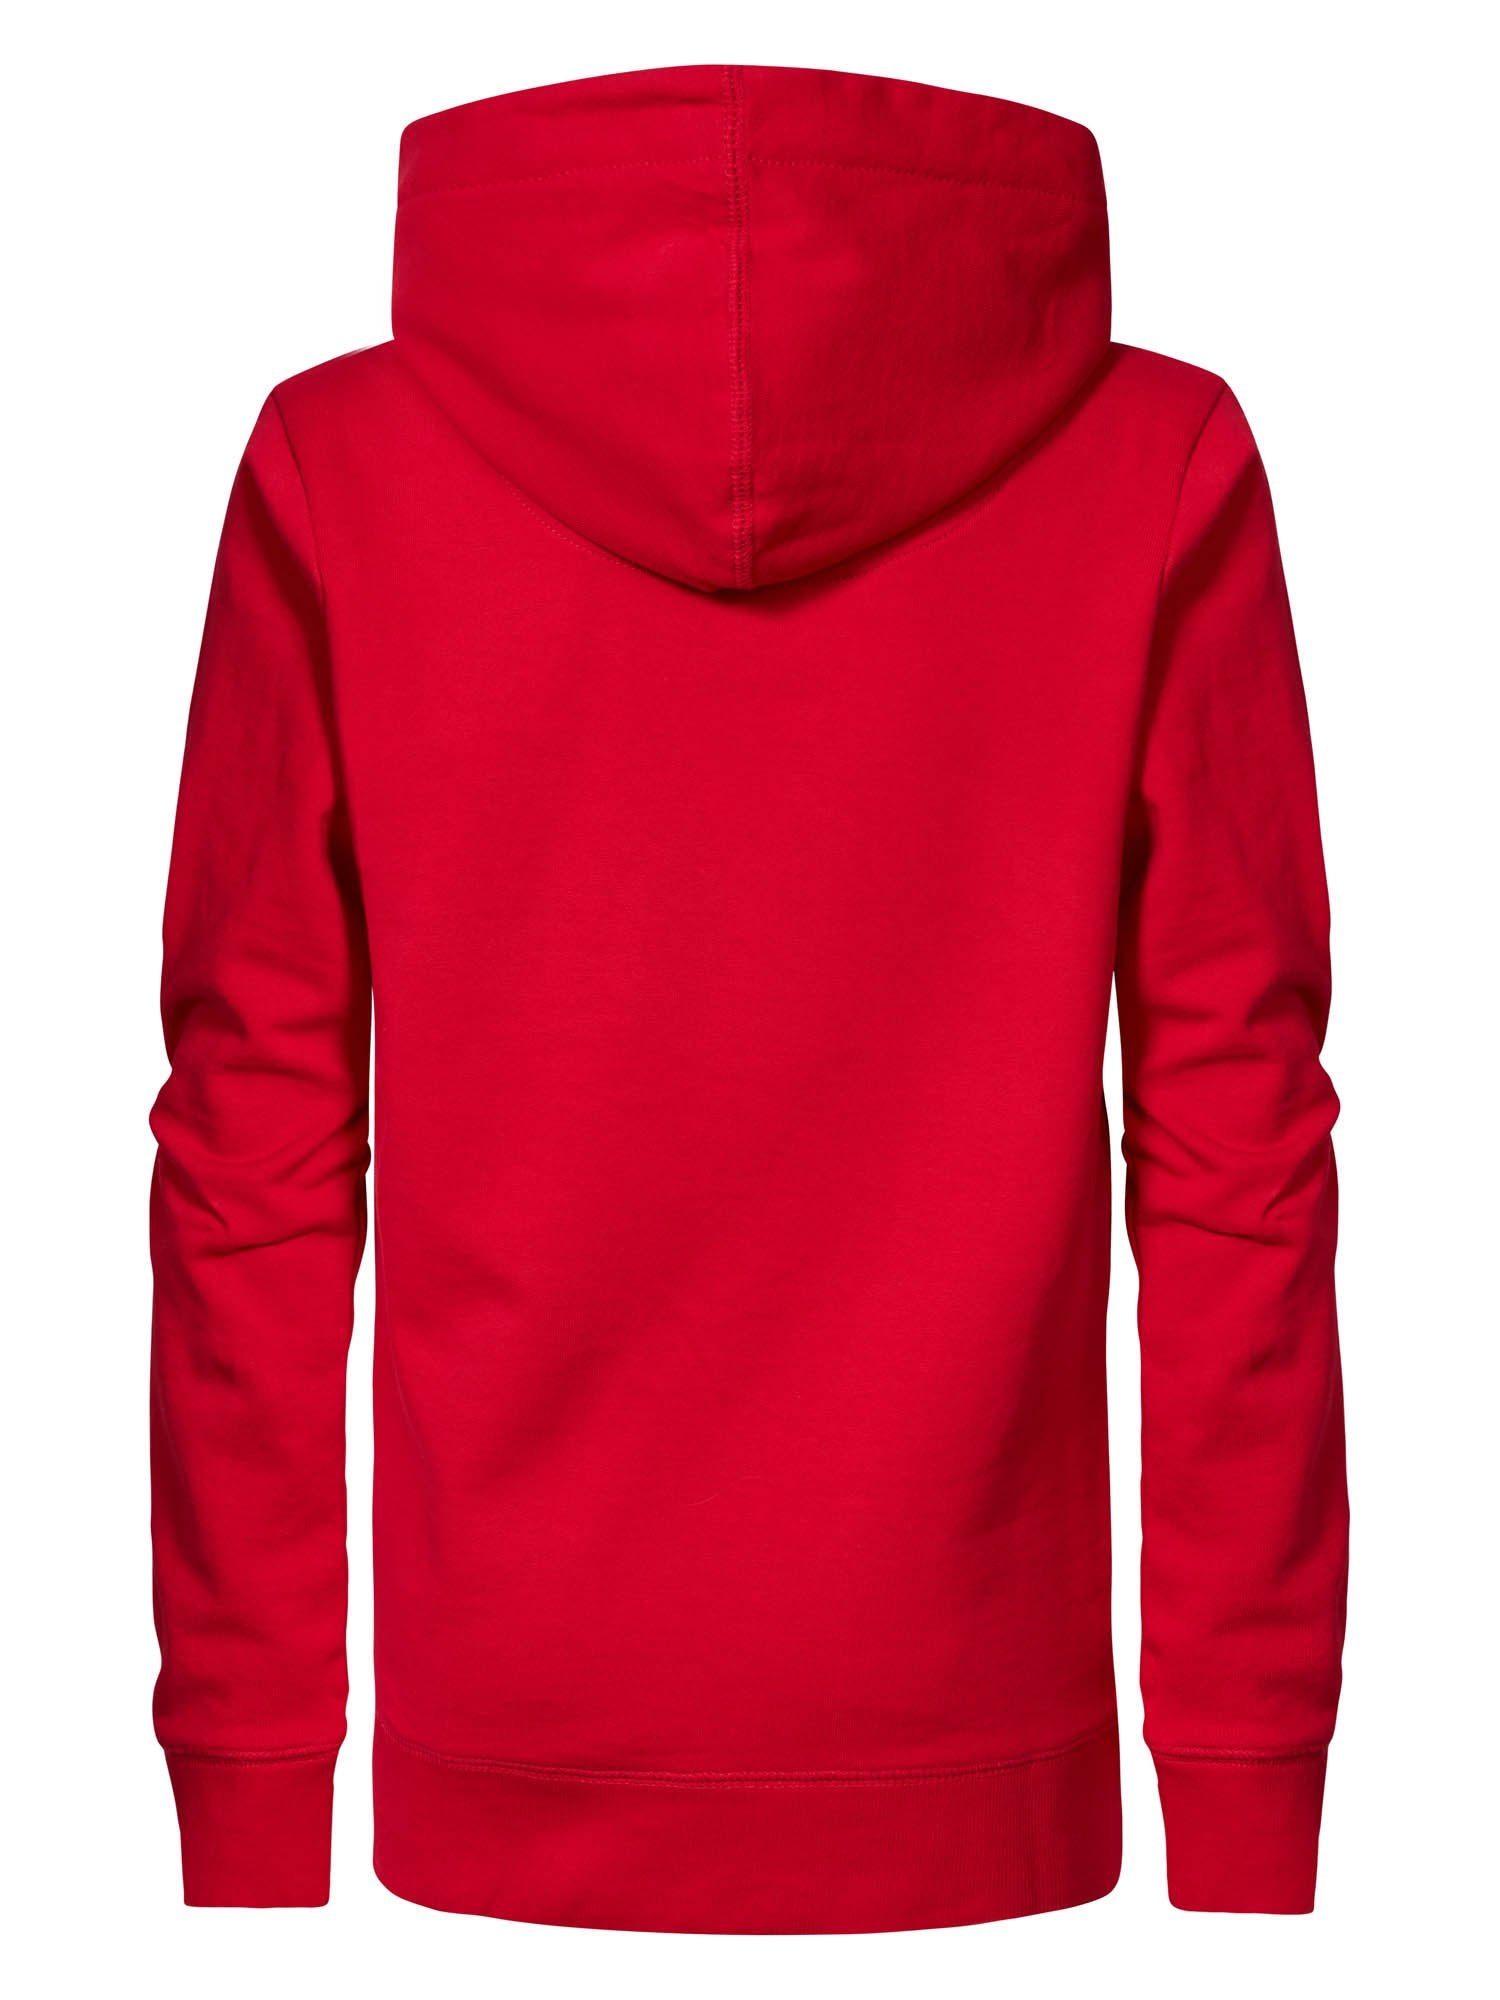 Jongens Hooded Sweater Text van Petrol in de kleur Urban Red in maat 164.